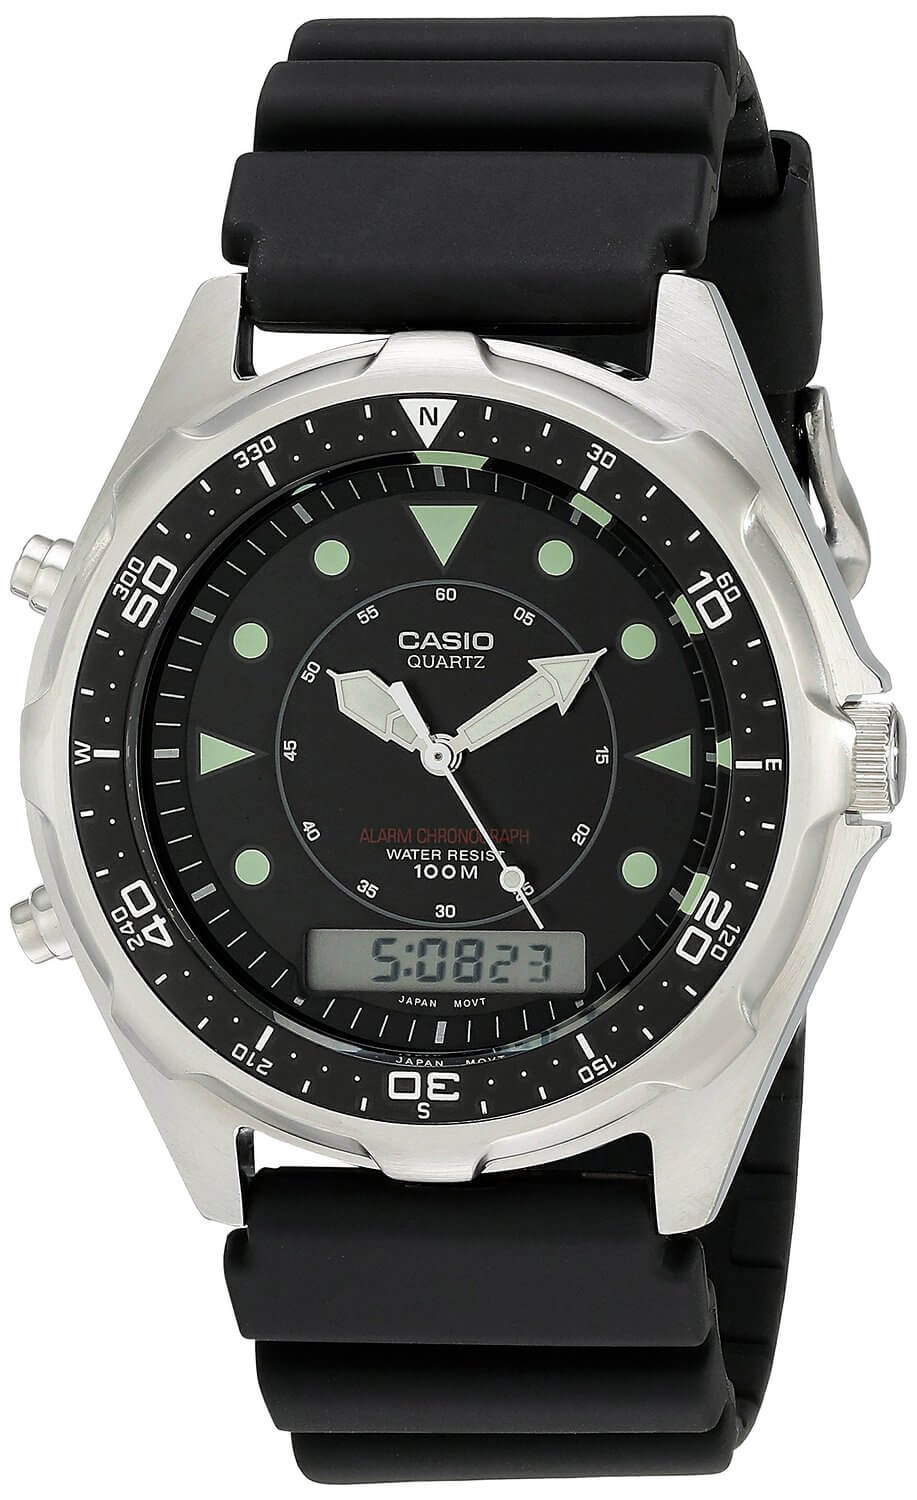 Casio AMW320R-1EV underwater watch